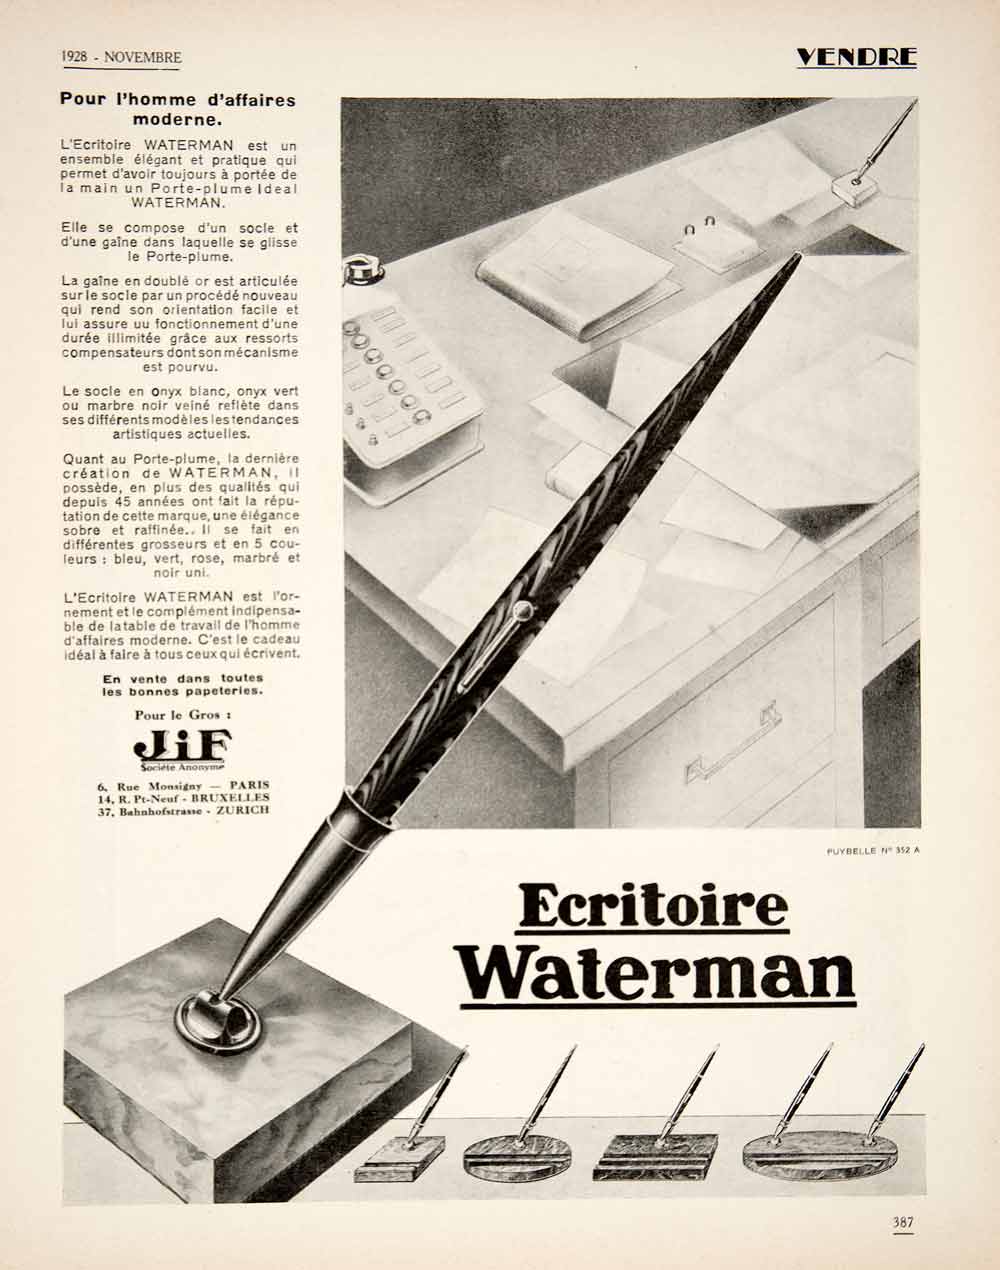 1928 Ad French JIF Ecritoire Waterman Ballpoint Pen Writing Desk Accessory VEN5